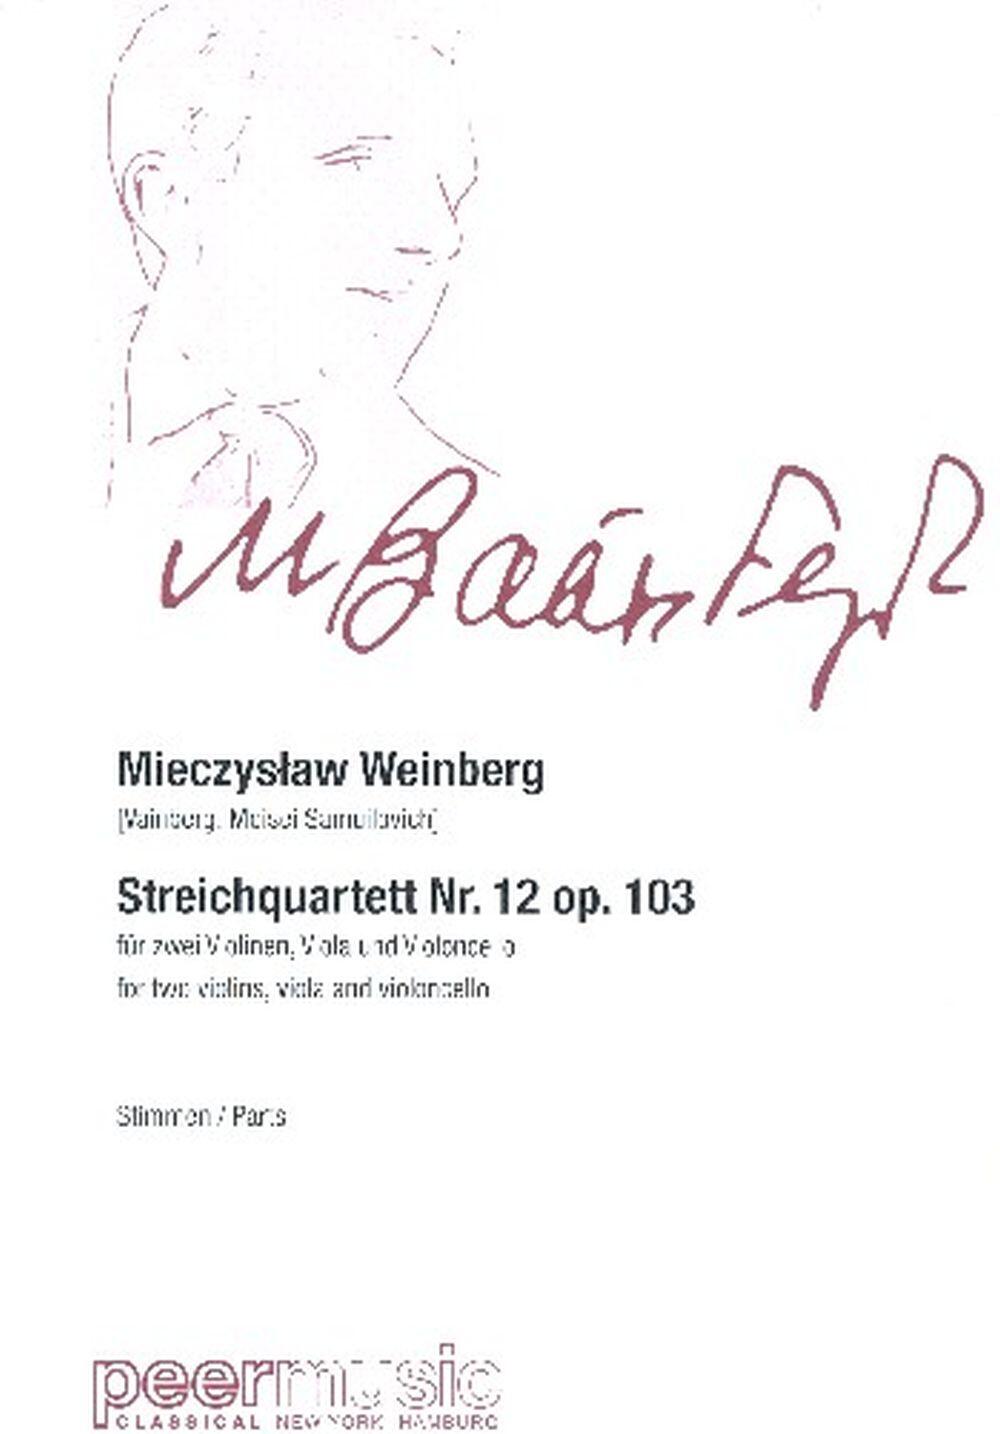 Streichquartett Nr 12 Opus 103  Mieczyslaw Weinberg  2 Violins, Viola and Cello Set de partitions : photo 1